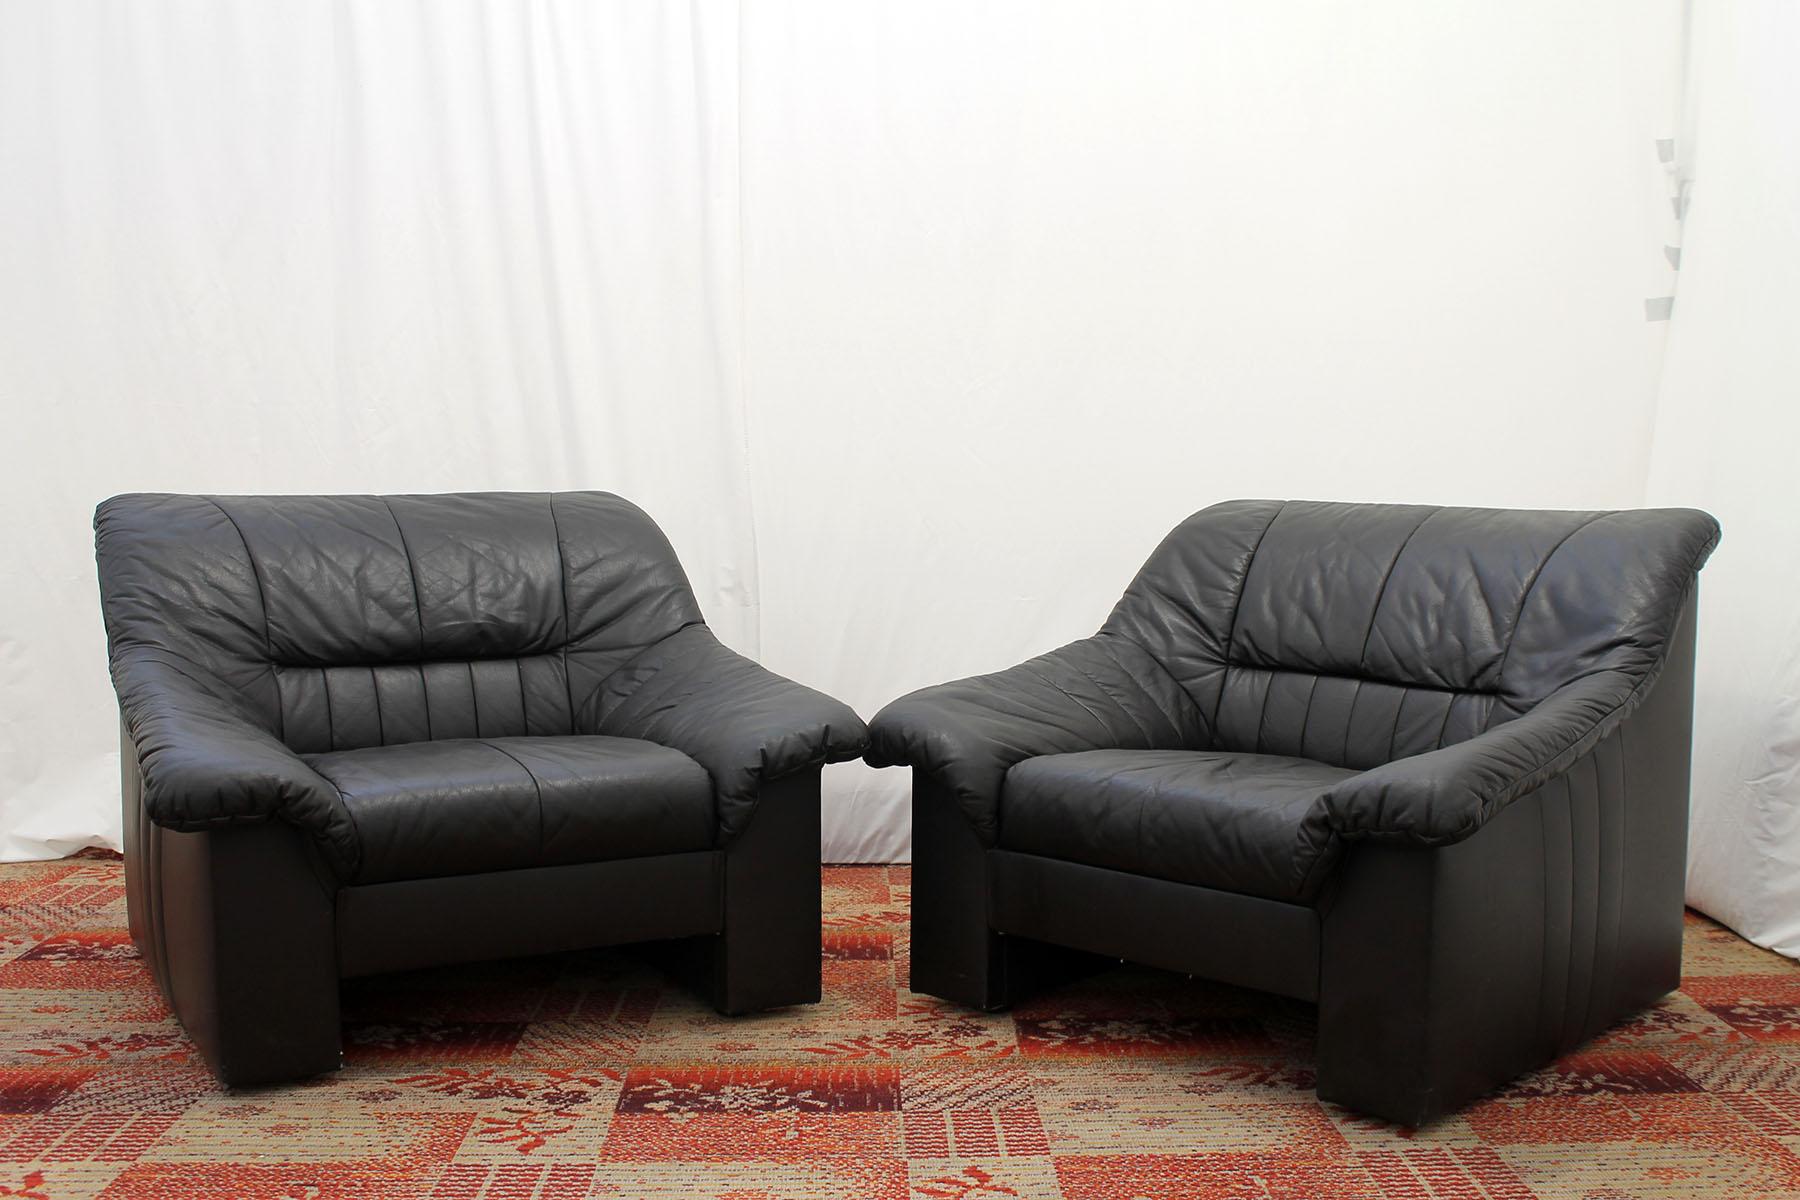 Ces confortables fauteuils en cuir ont été fabriqués dans les années 1980 dans l'ancienne Tchécoslovaquie.
Les chaises sont en cuir noir.
Ils sont en bon état et n'ont subi aucun dommage.
Le prix correspond à la paire.

 Dimensions des